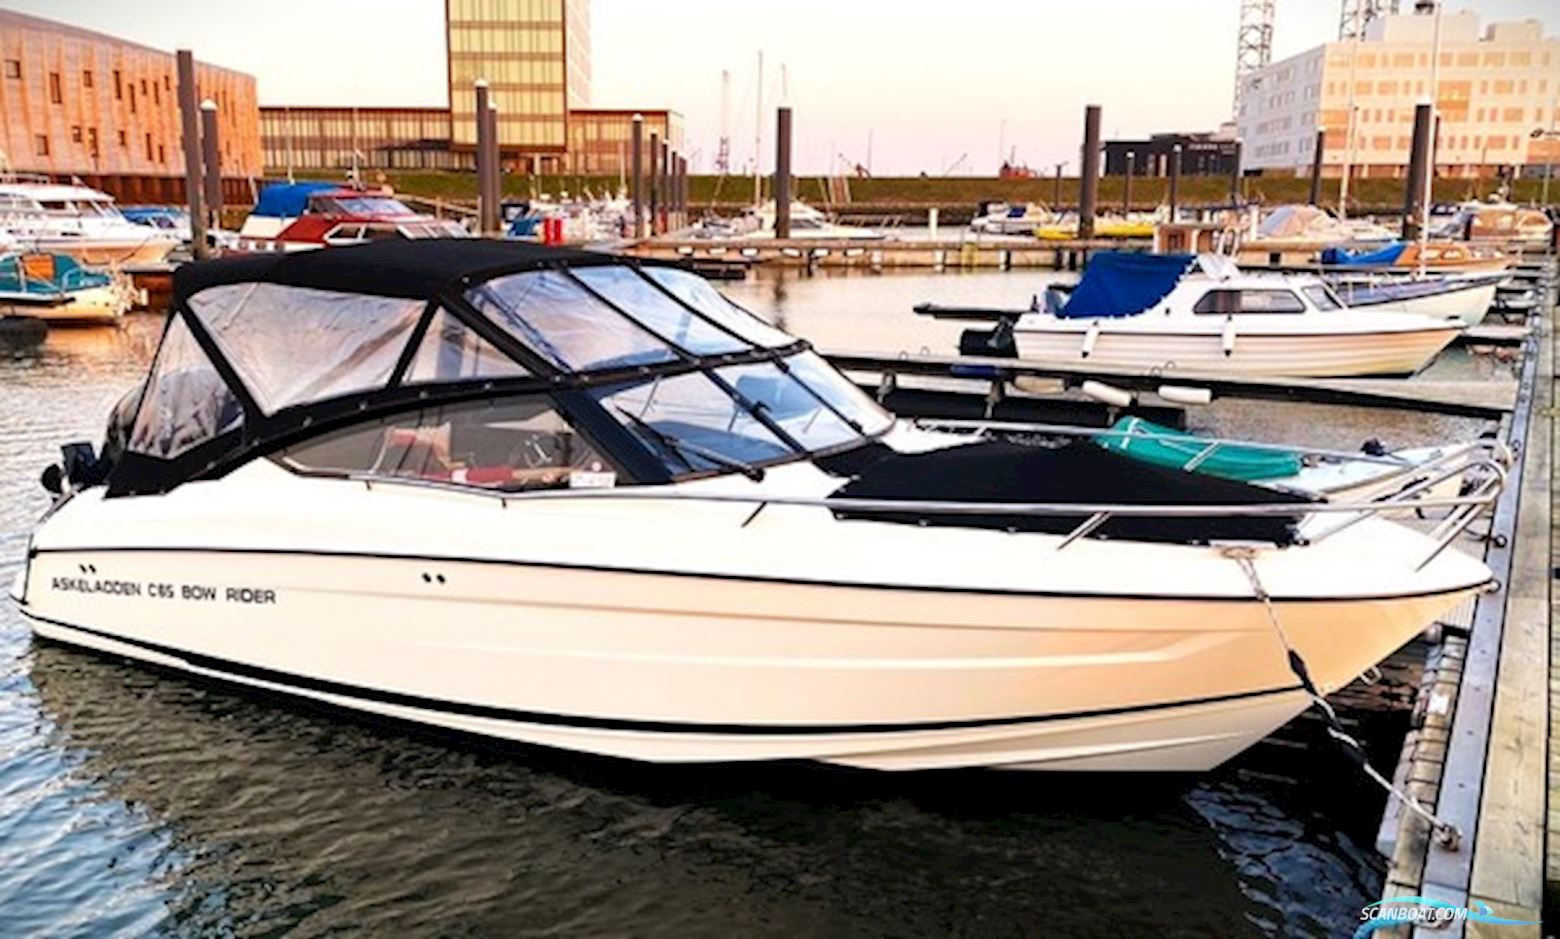 Askeladden C65 Bowrider Mercury 200hk Pro. Motor boat 2018, with Mercury engine, Denmark